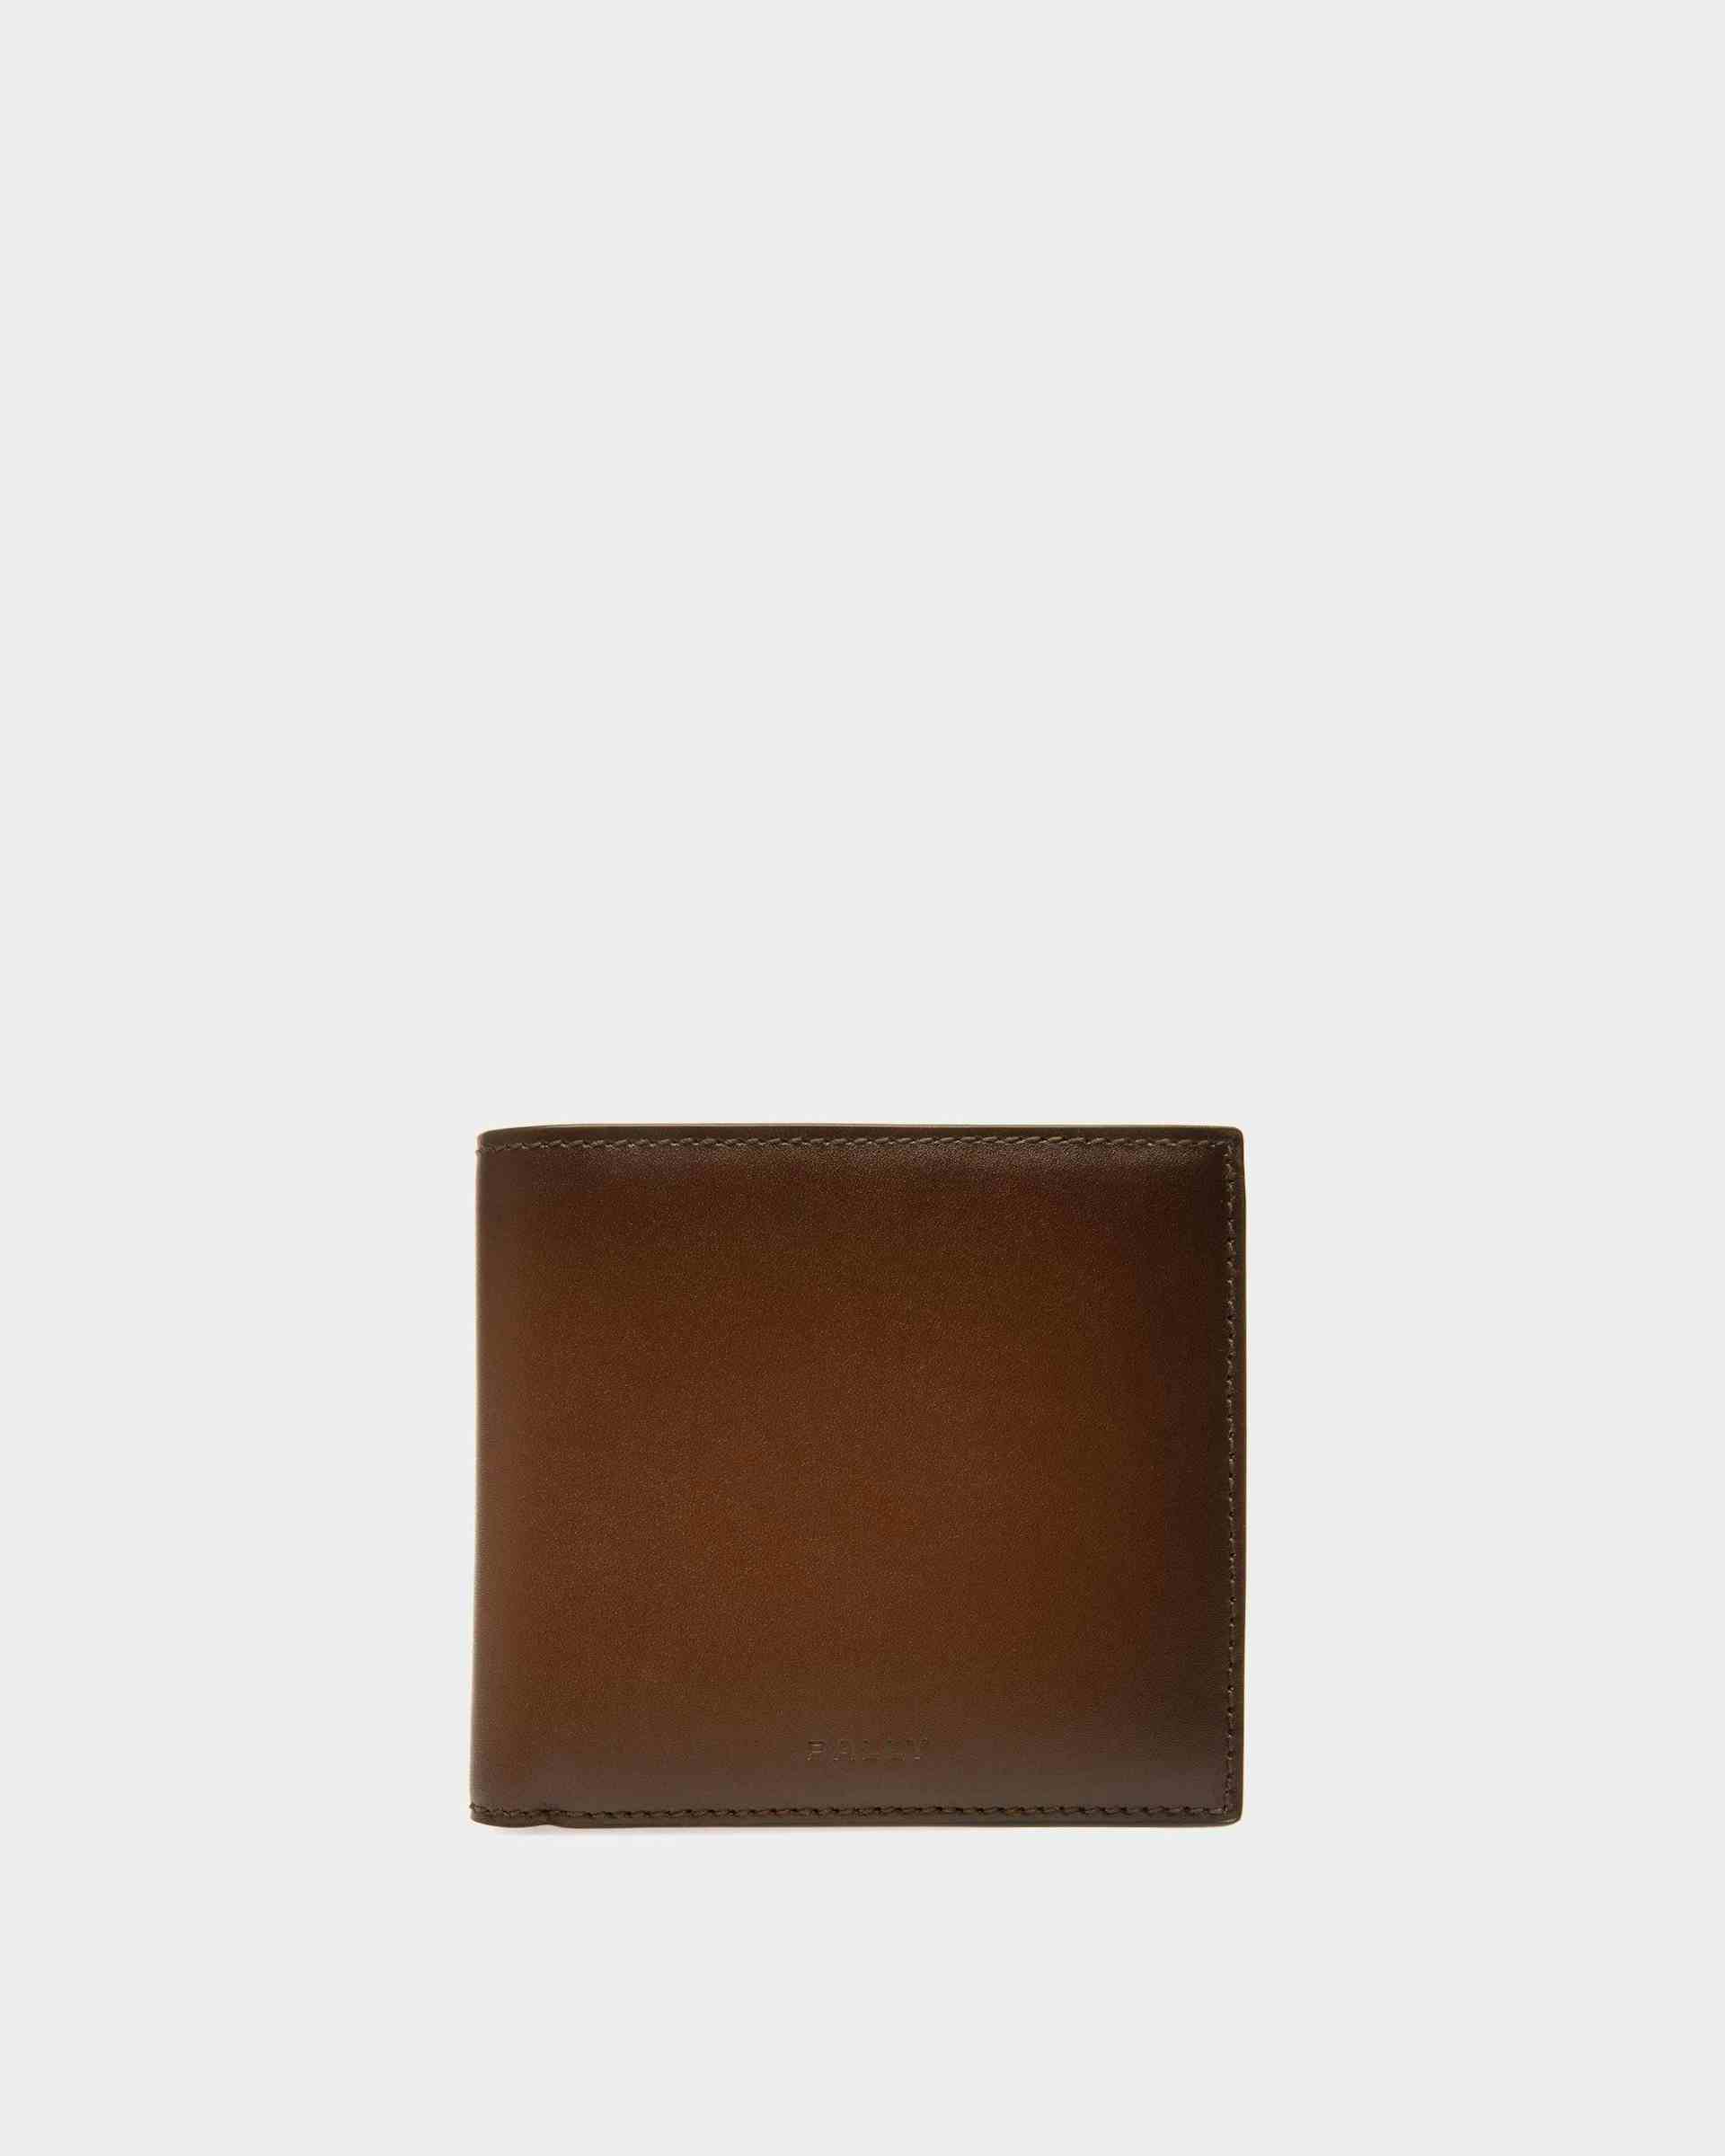 Speciale Bi-fold Wallet In Brown Leather - Men's - Bally